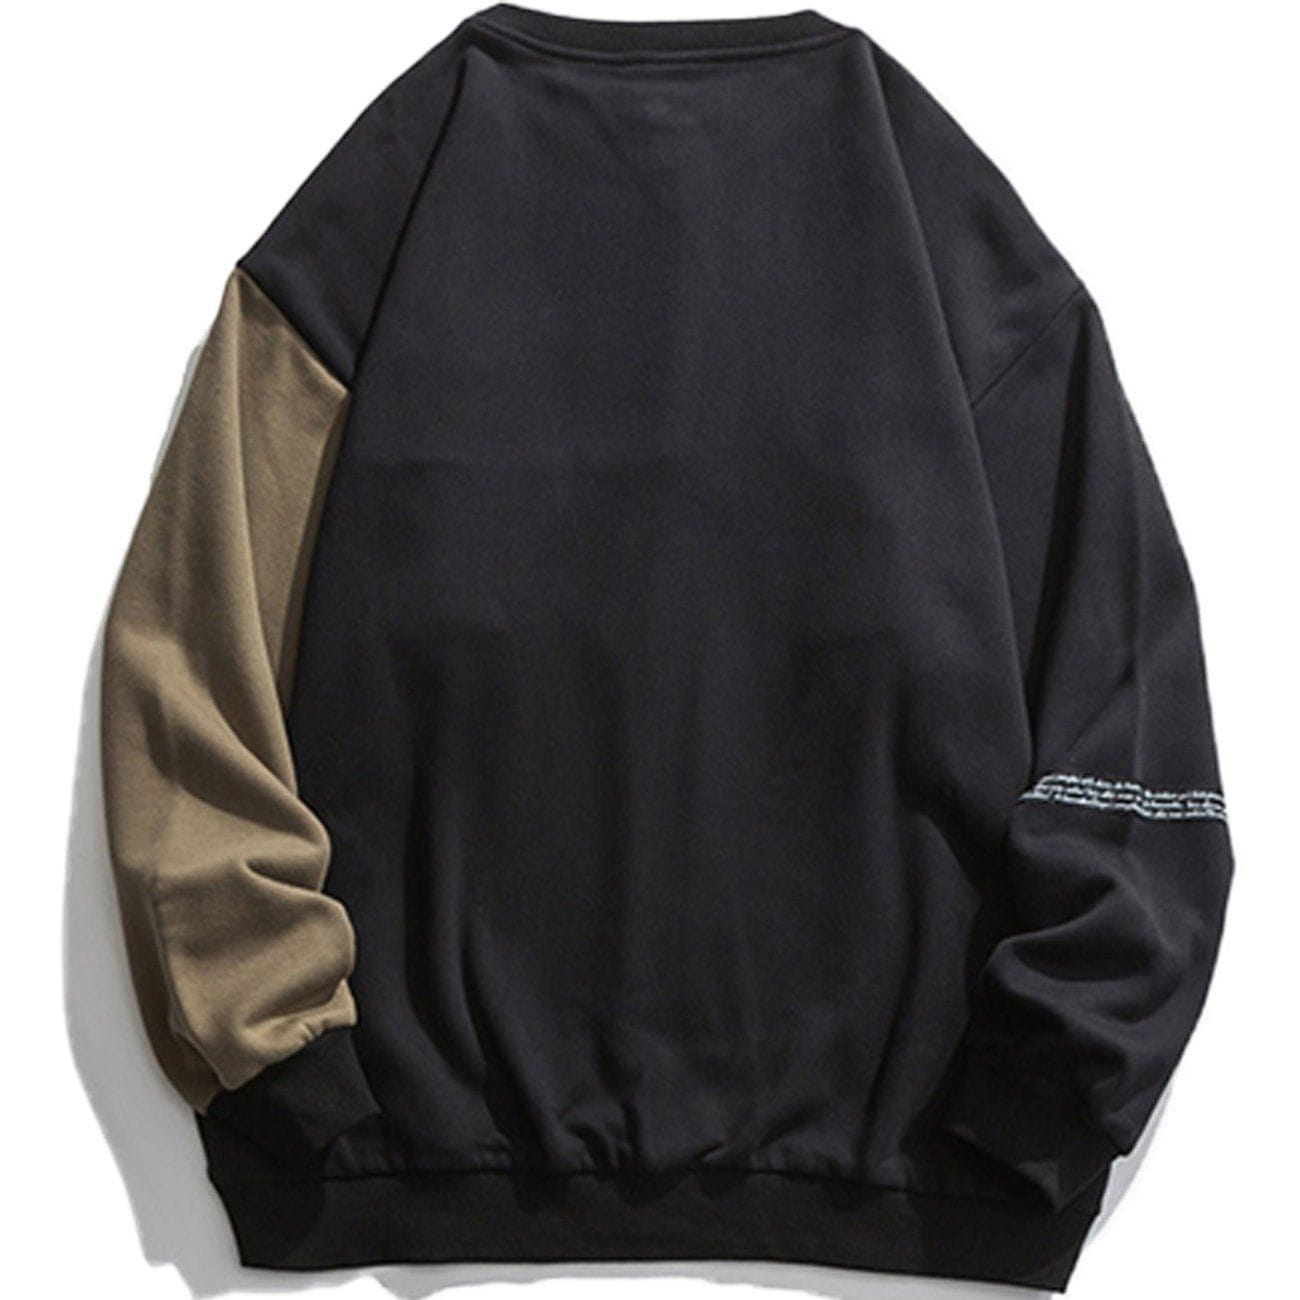 Eprezzy® - Letter Stitching Sweatshirt Streetwear Fashion - eprezzy.com